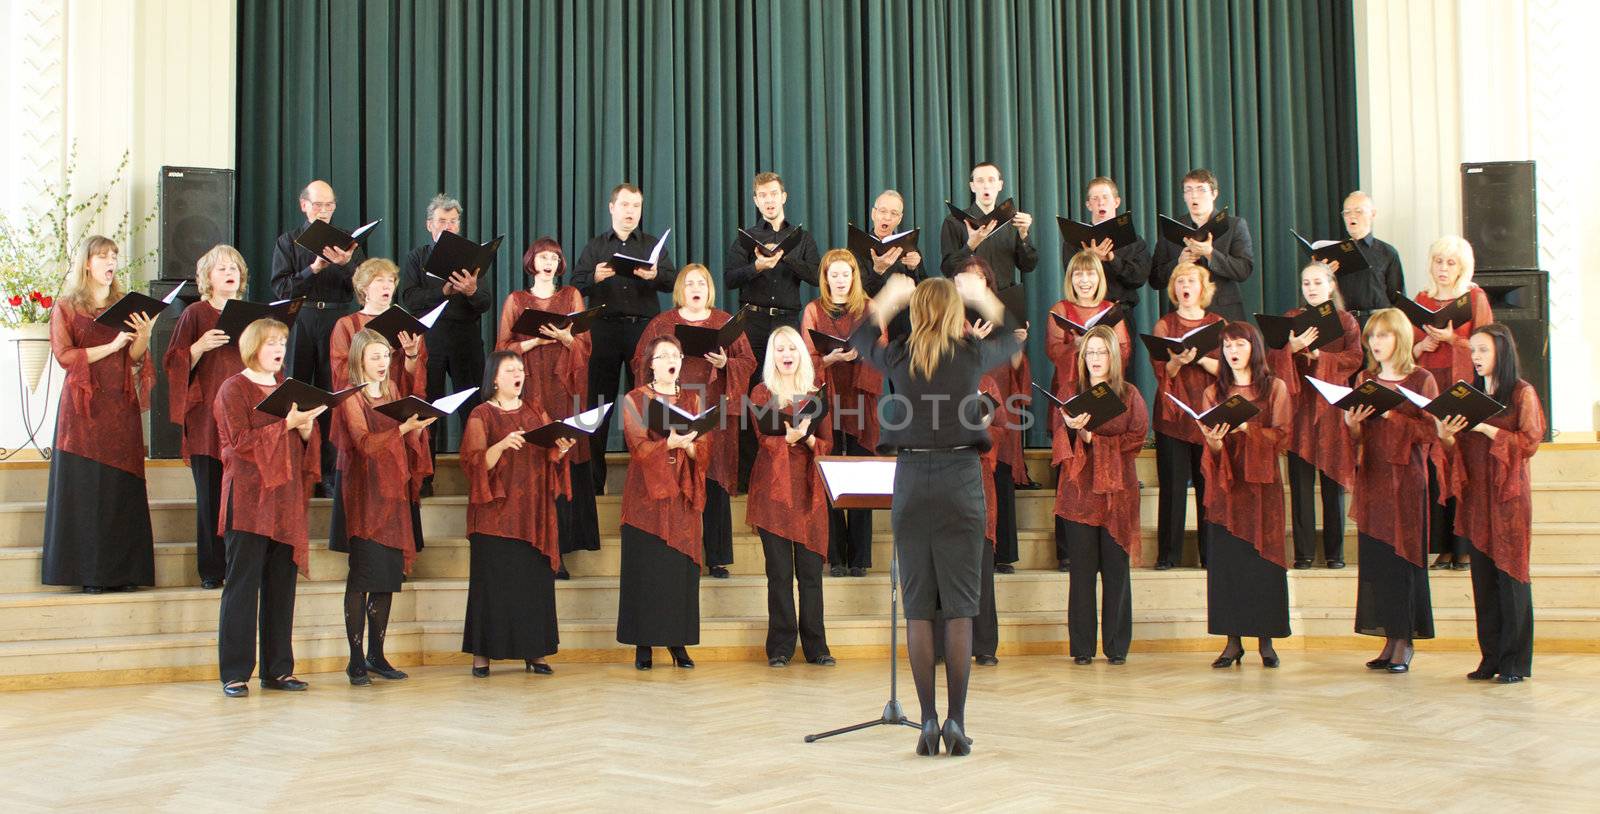 Local Choir Contest by ursolv